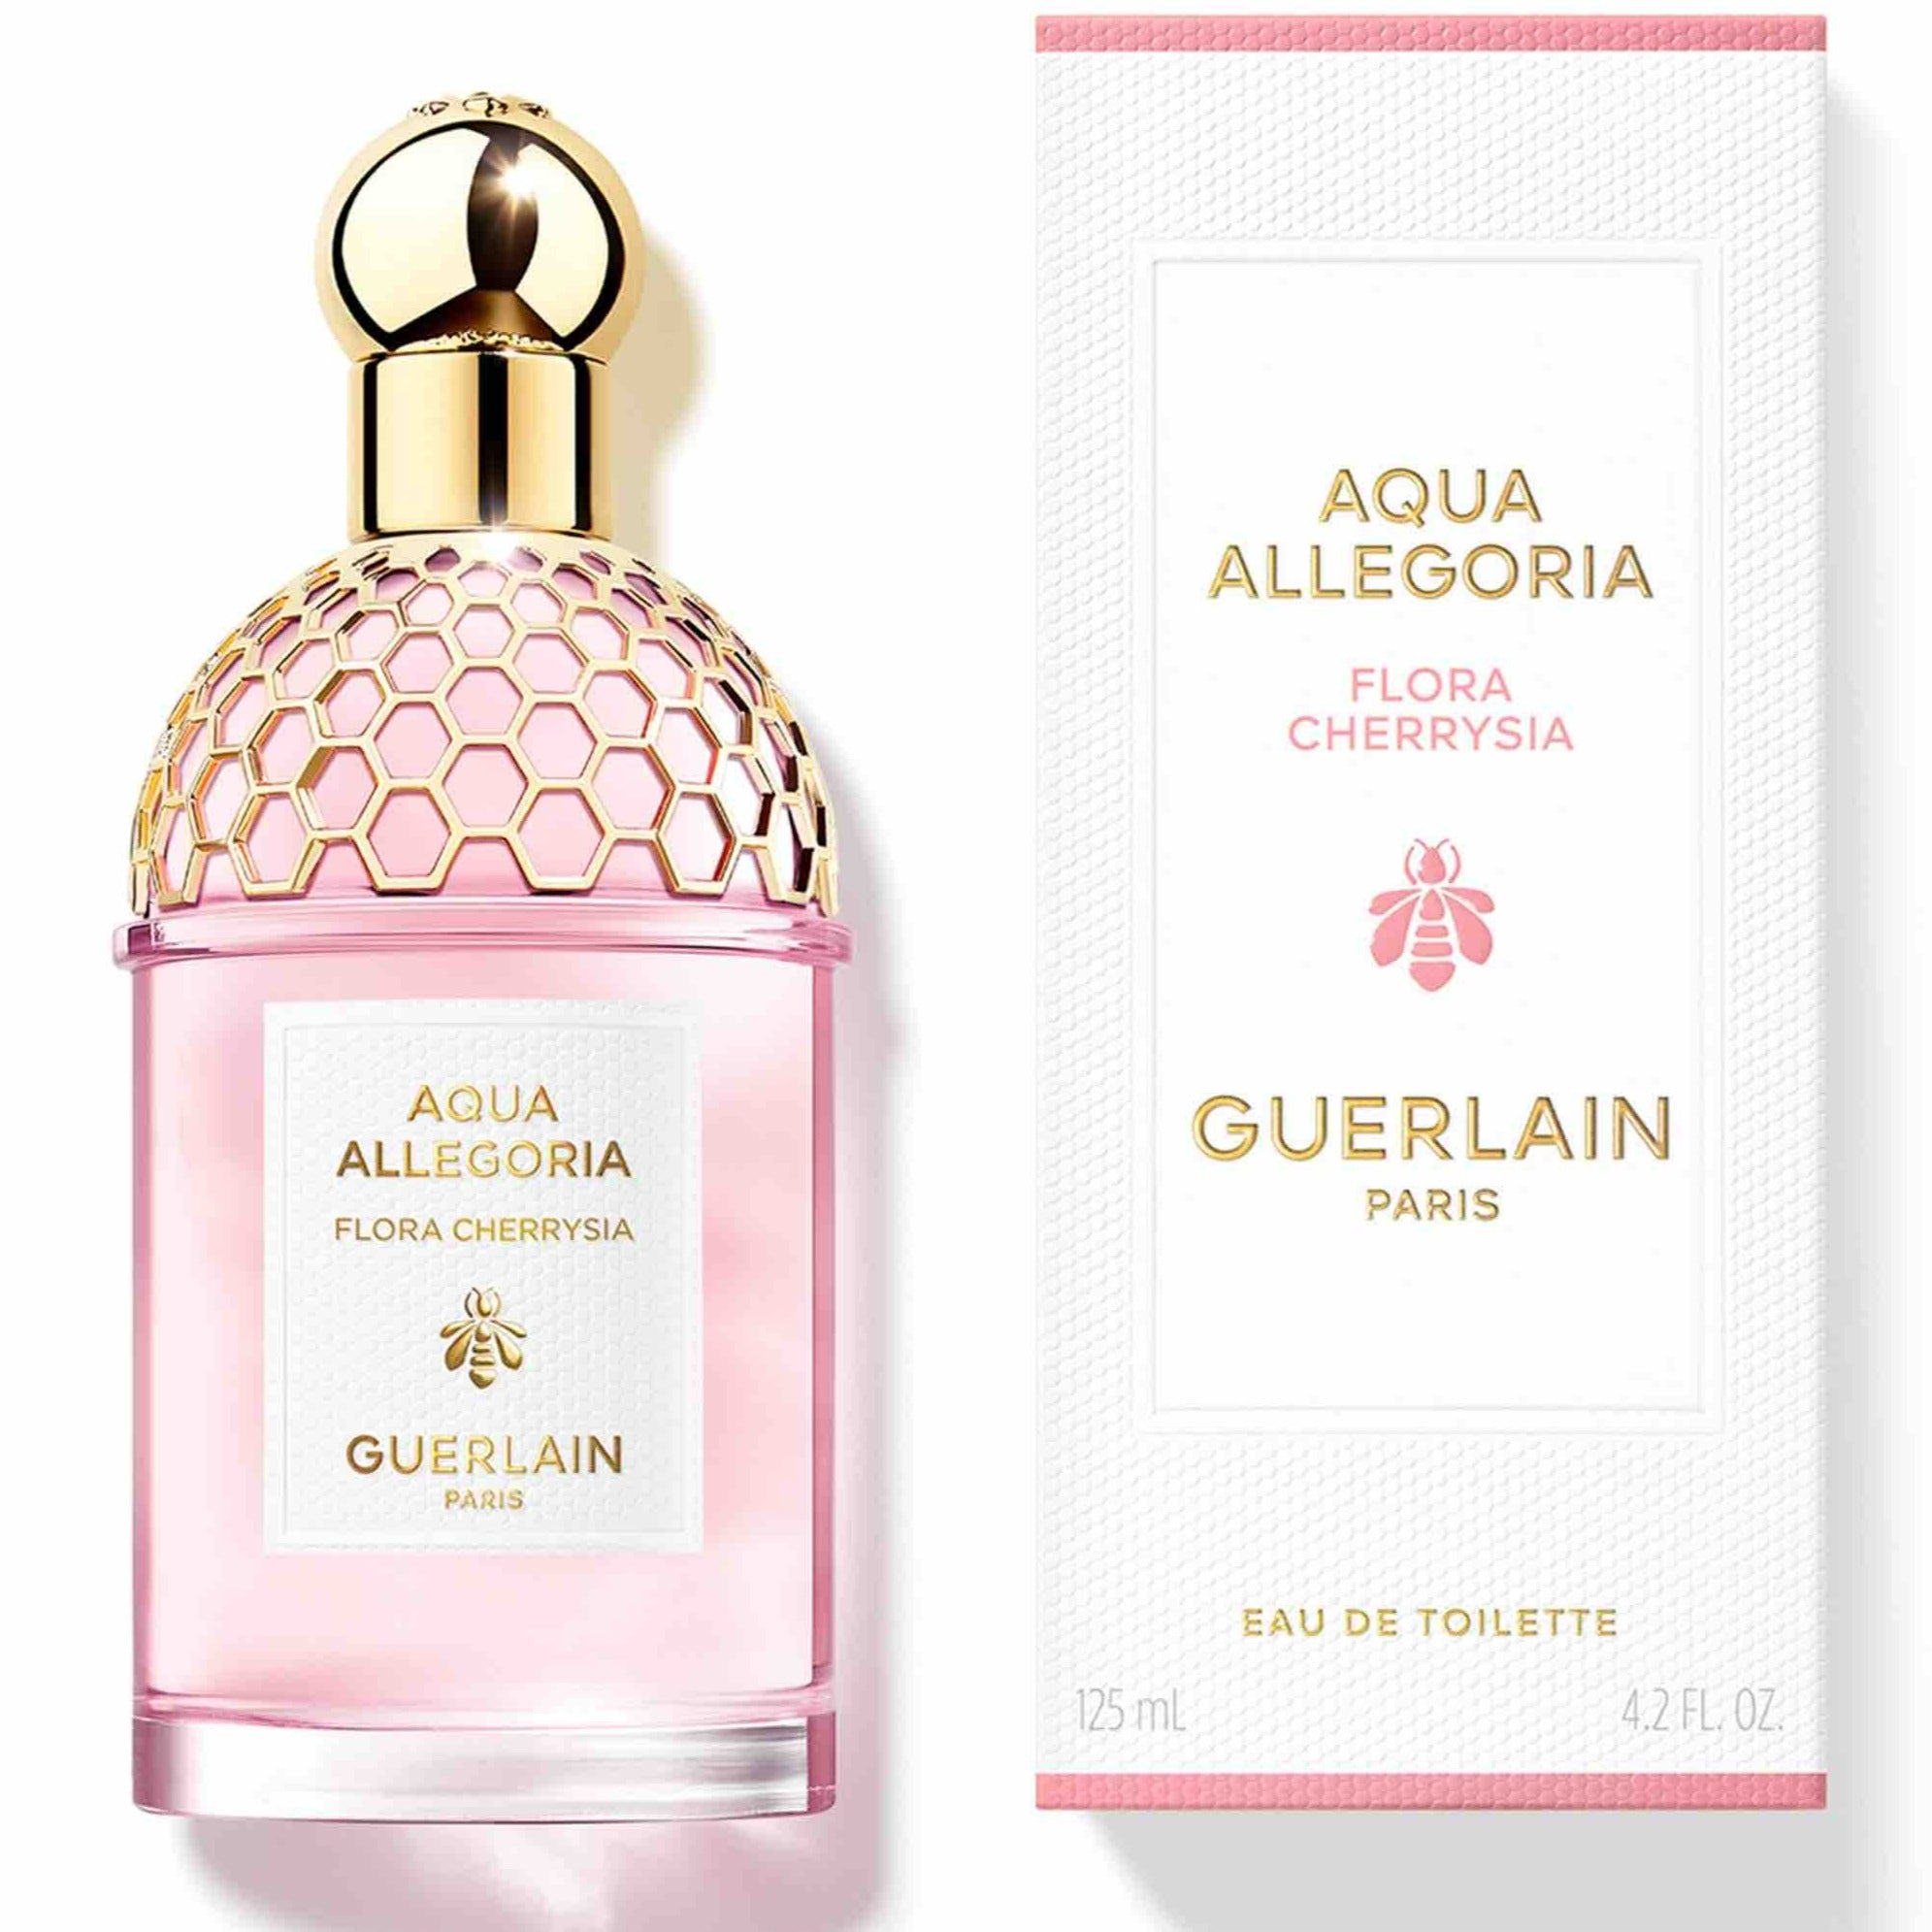 Guerlain Aqua Allegoria Flora Cherrysia EDT | My Perfume Shop Australia